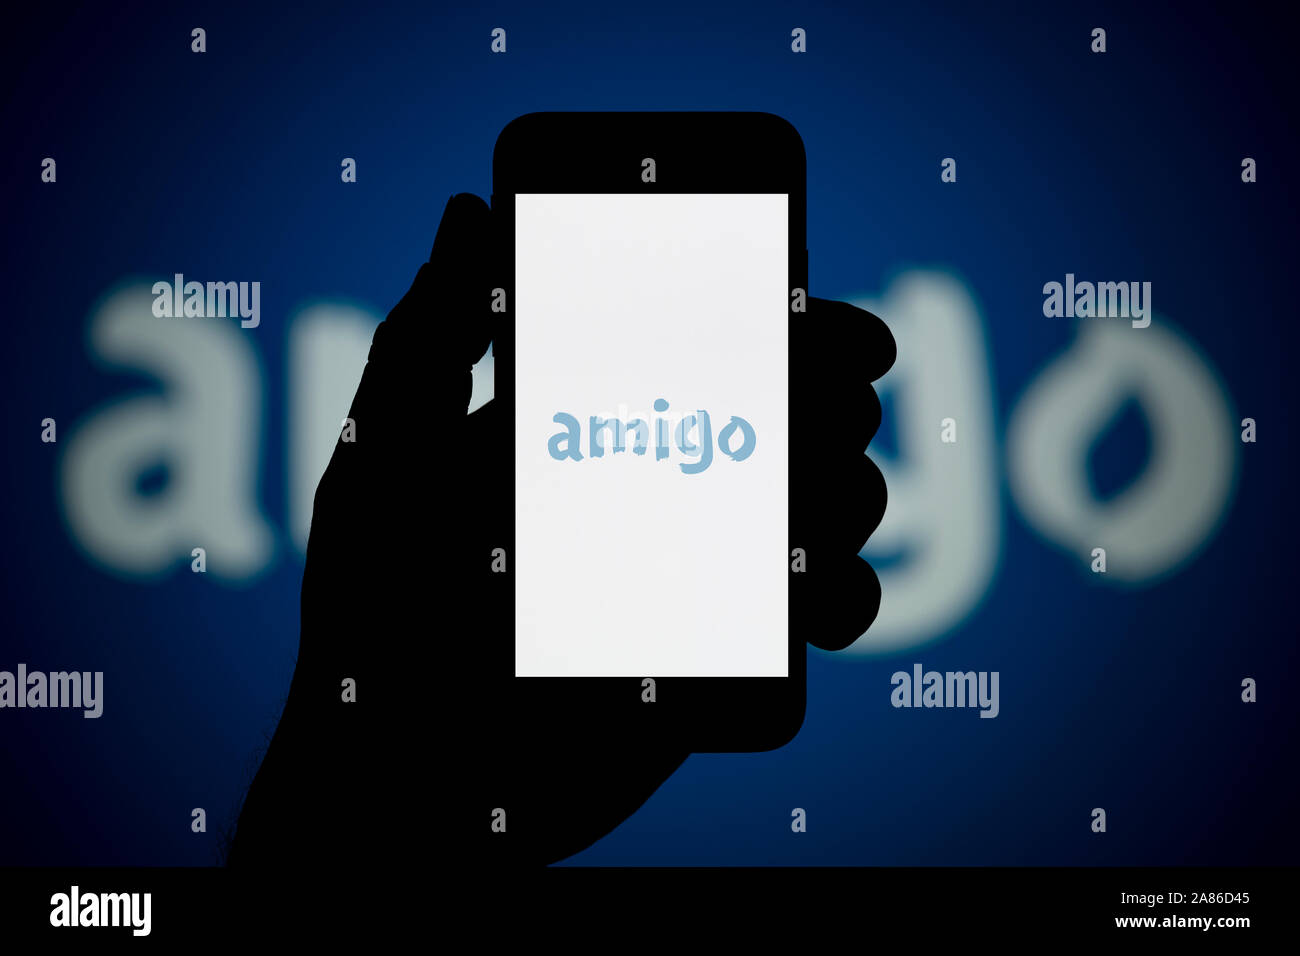 Un homme se penche sur son iPhone qui affiche le logo prêts Amigo, avec le même logo en arrière-plan (usage éditorial uniquement). Banque D'Images